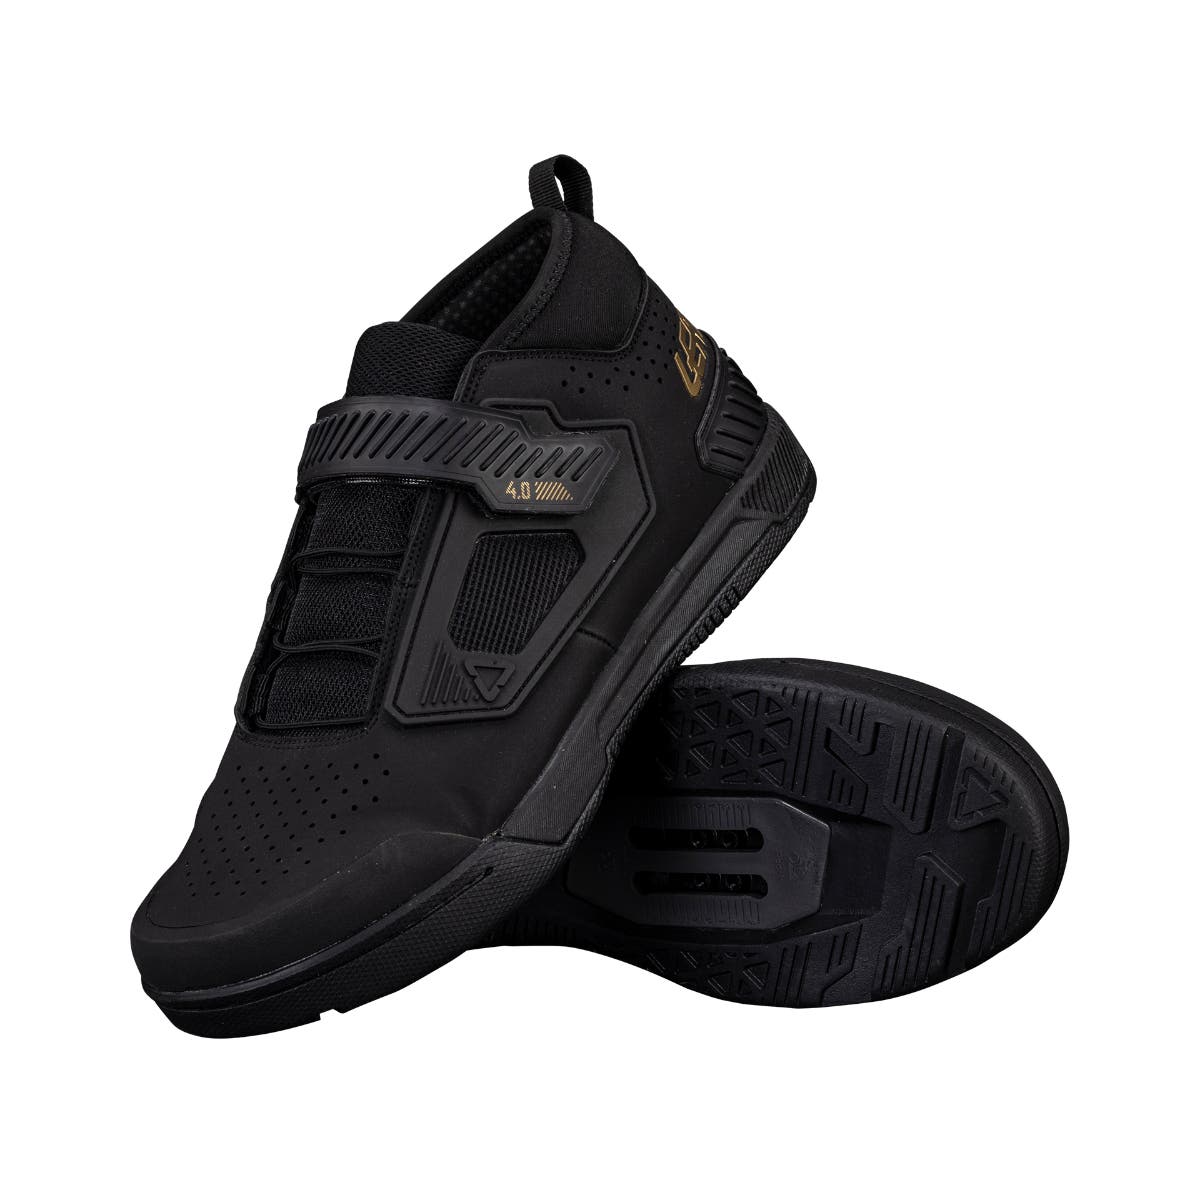 Leatt - 4.0 Clip Shoes